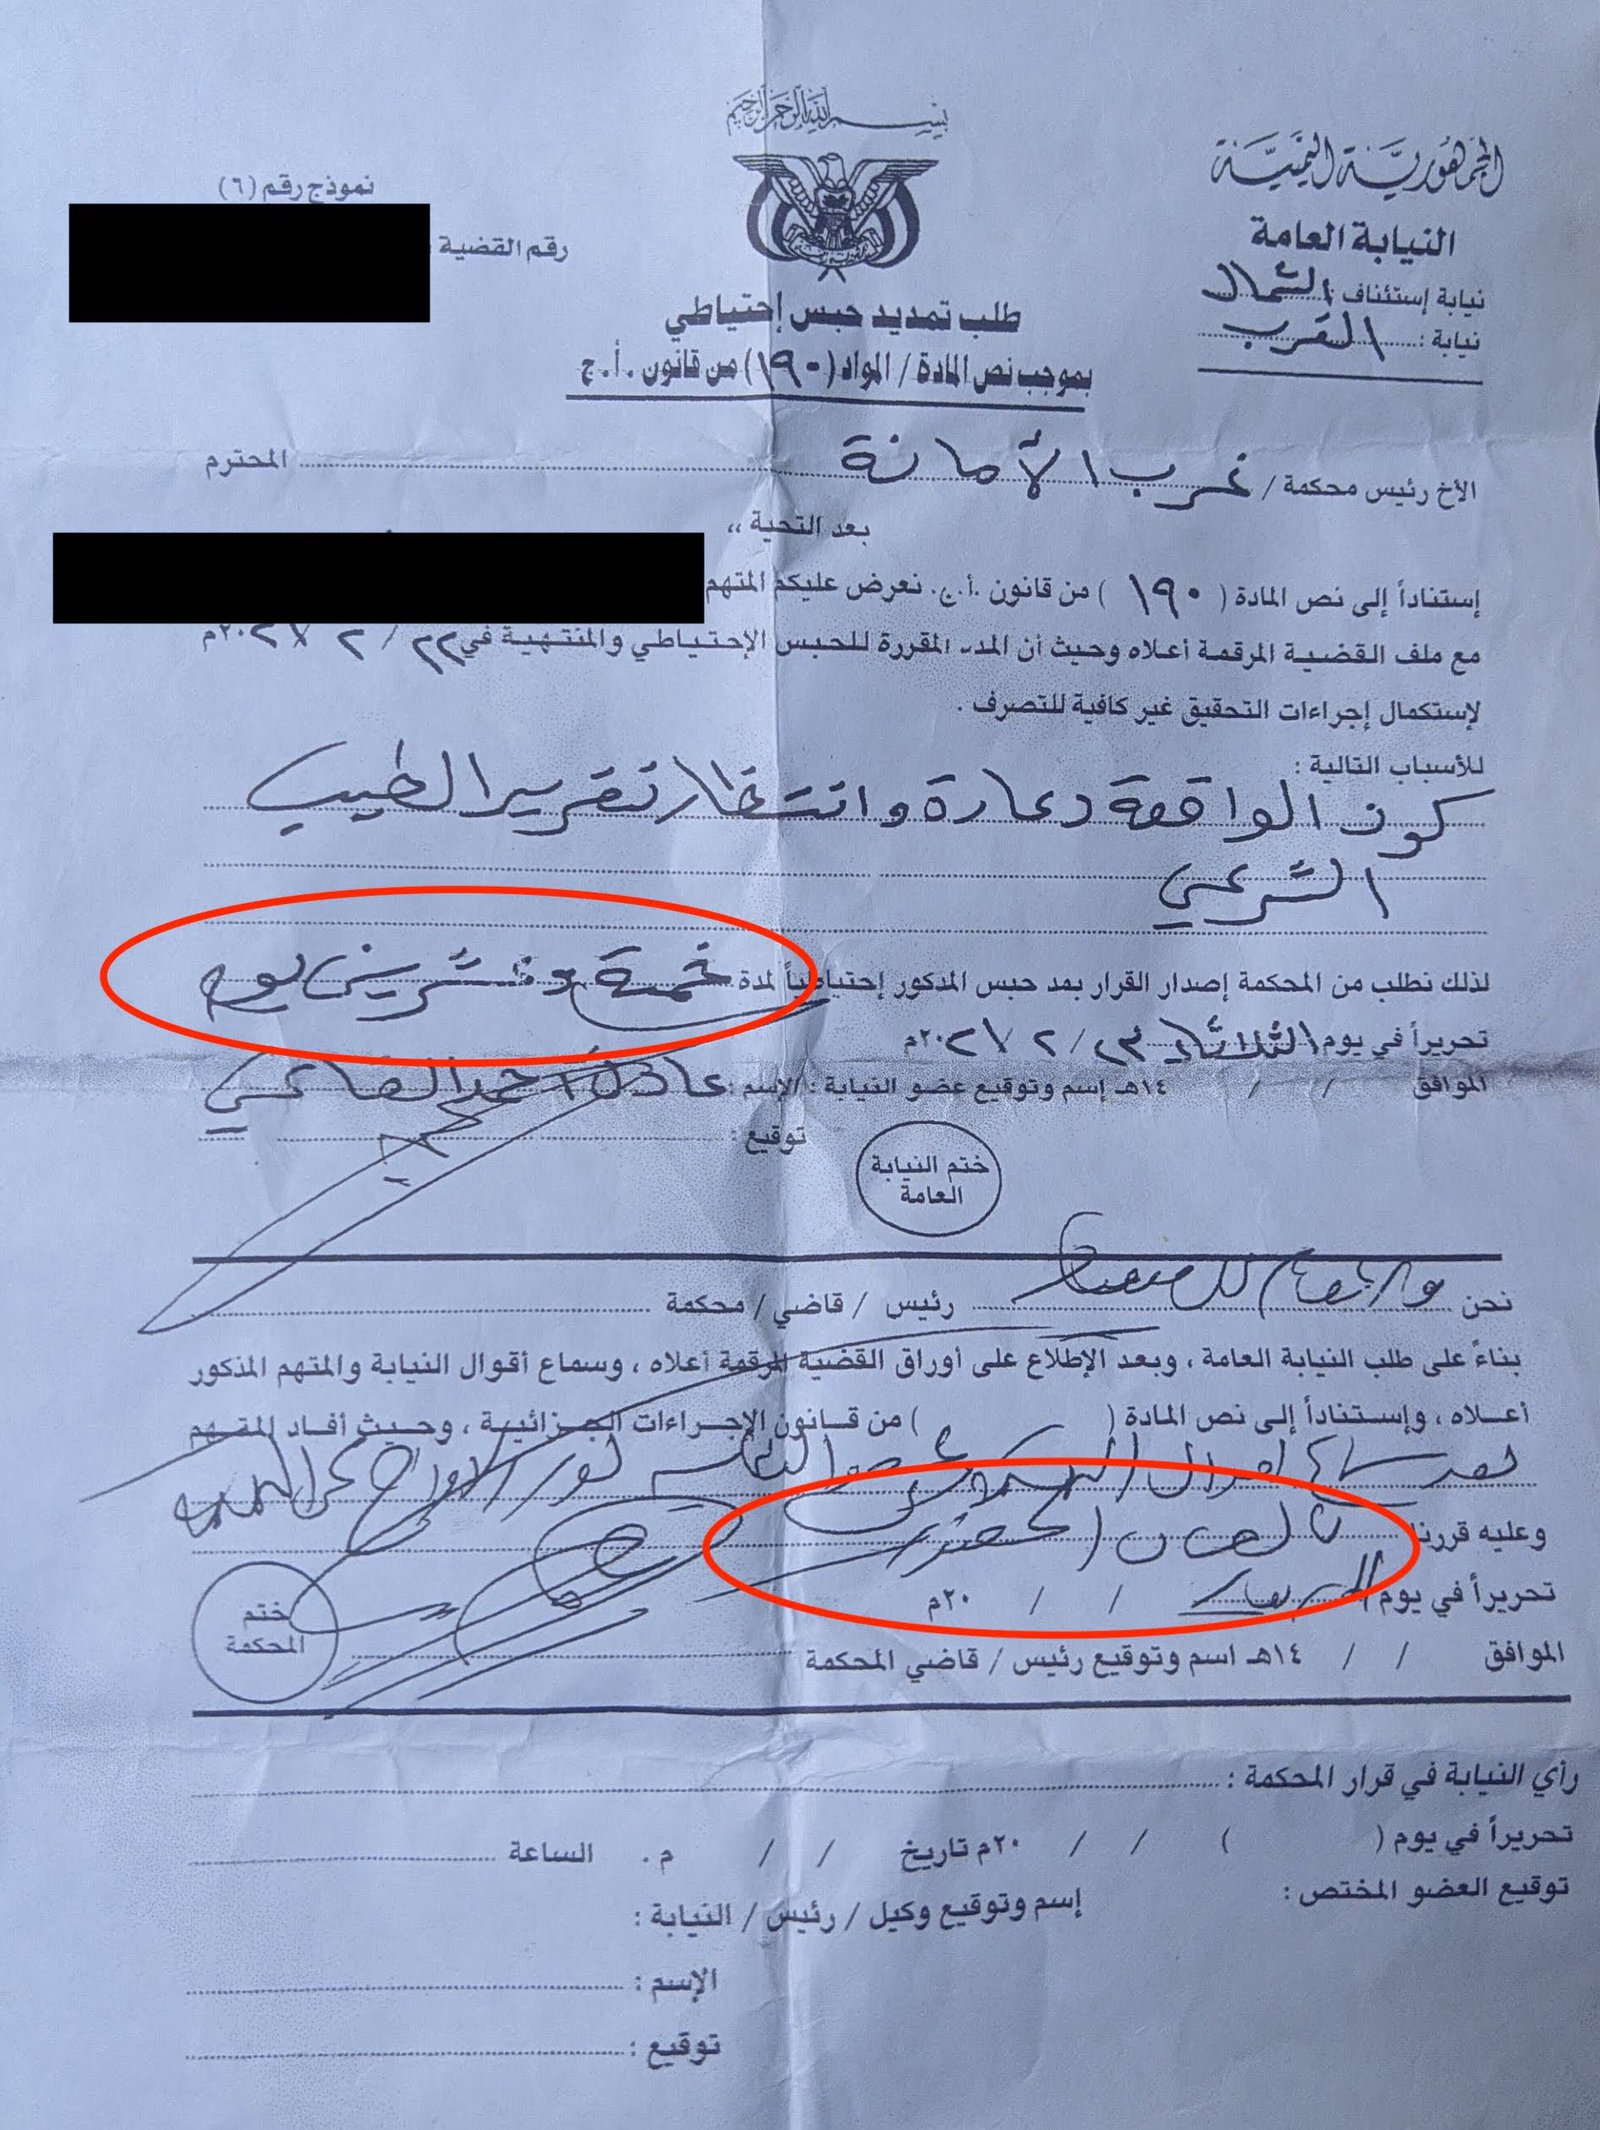  الوثيقة الخاصة بأمر تجديد الحبس الاحتياطي بحق شامة لمدة "خمسة وعشرين يومًا" مع شرط الإفراج "بالضمان الحضوري".  Document regarding renewal order of detention for a period of twenty five days - Women Yemen.